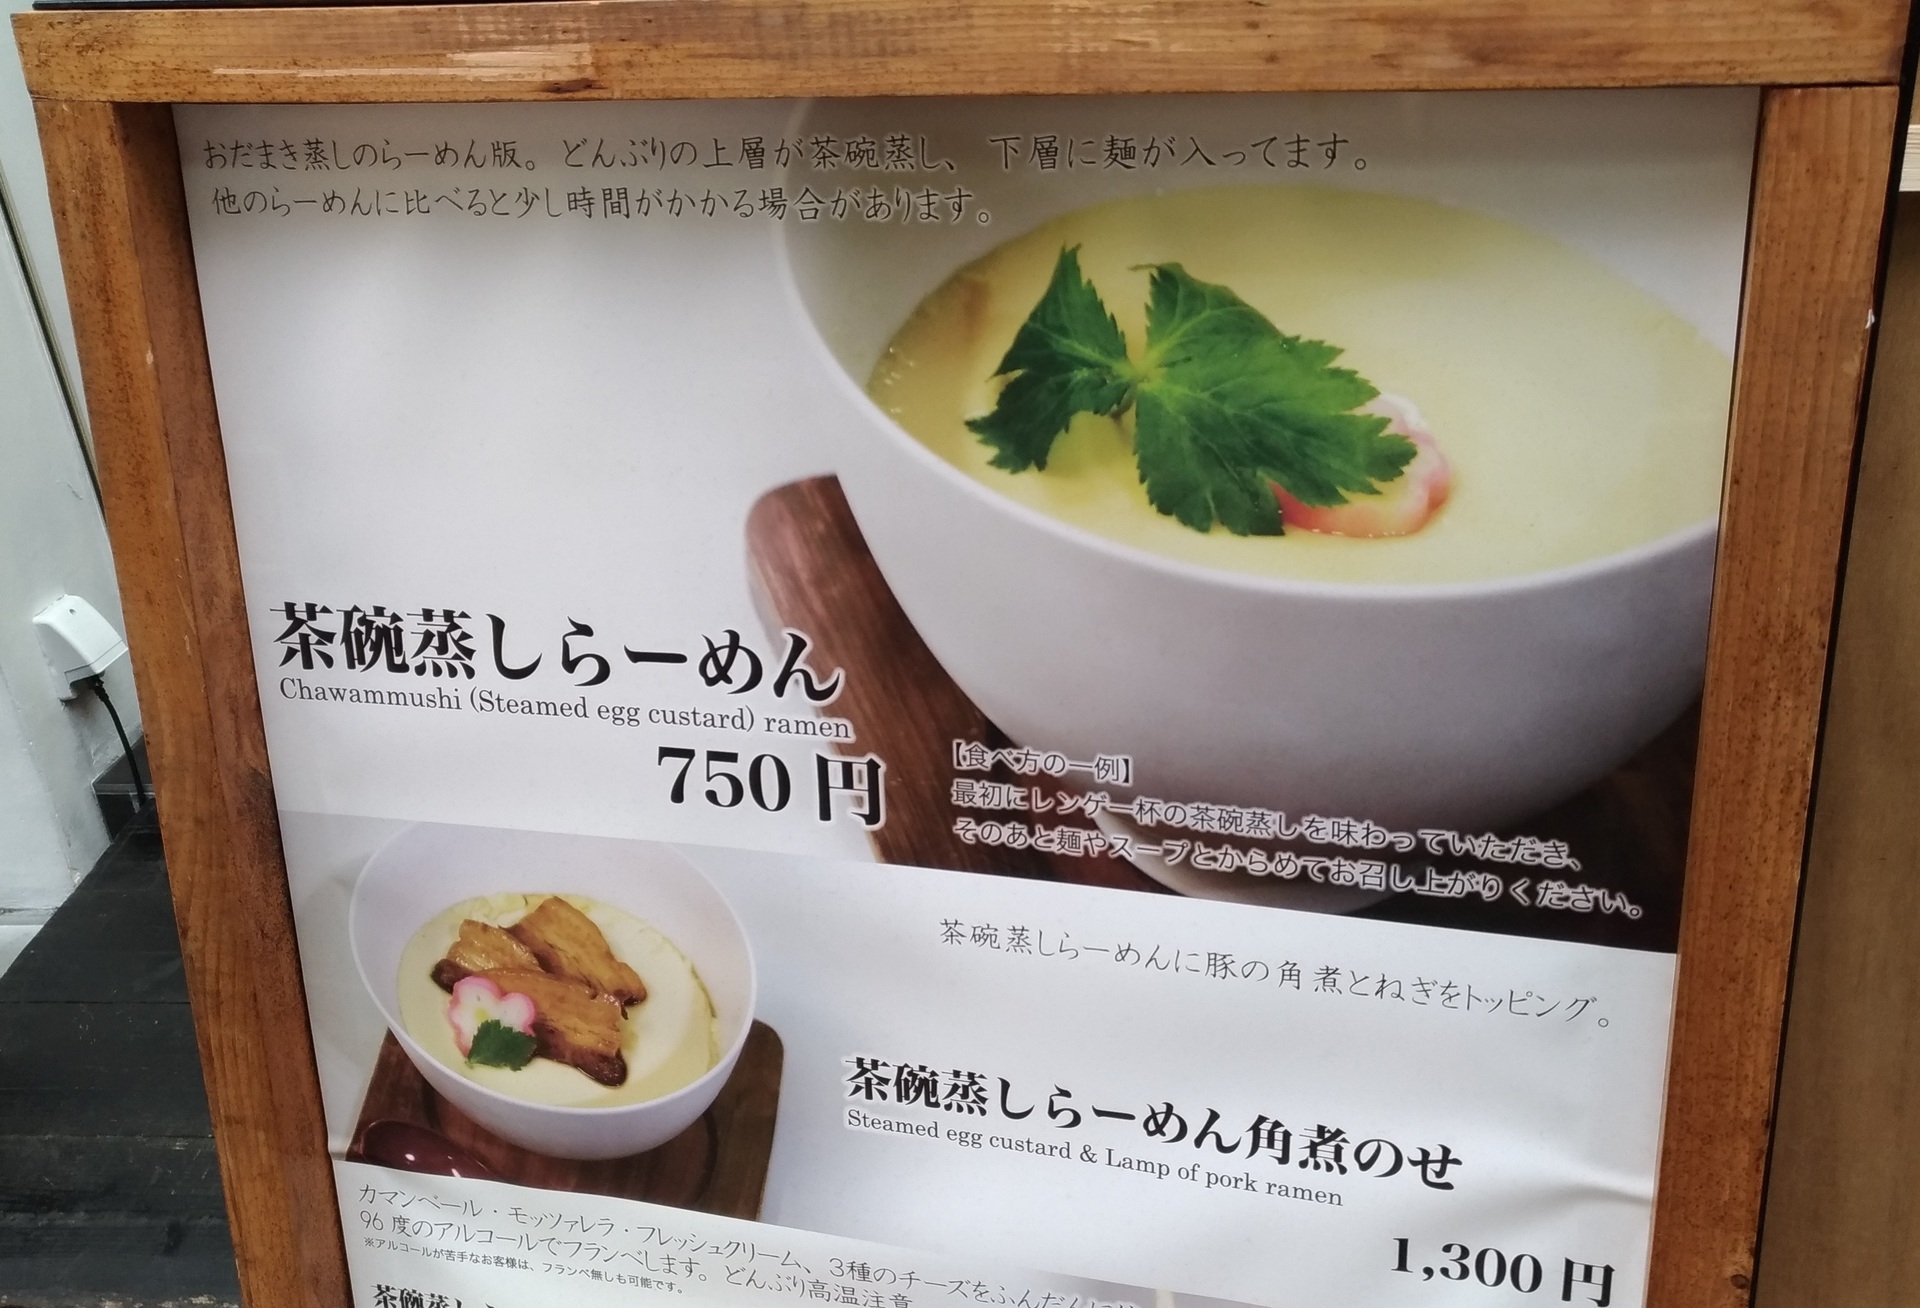 茶碗蒸しラーメン天満 雨上がり決死隊グルメを見て食べてみたい 大阪市北区中津 賃貸マンションで一人暮らし始めてみました